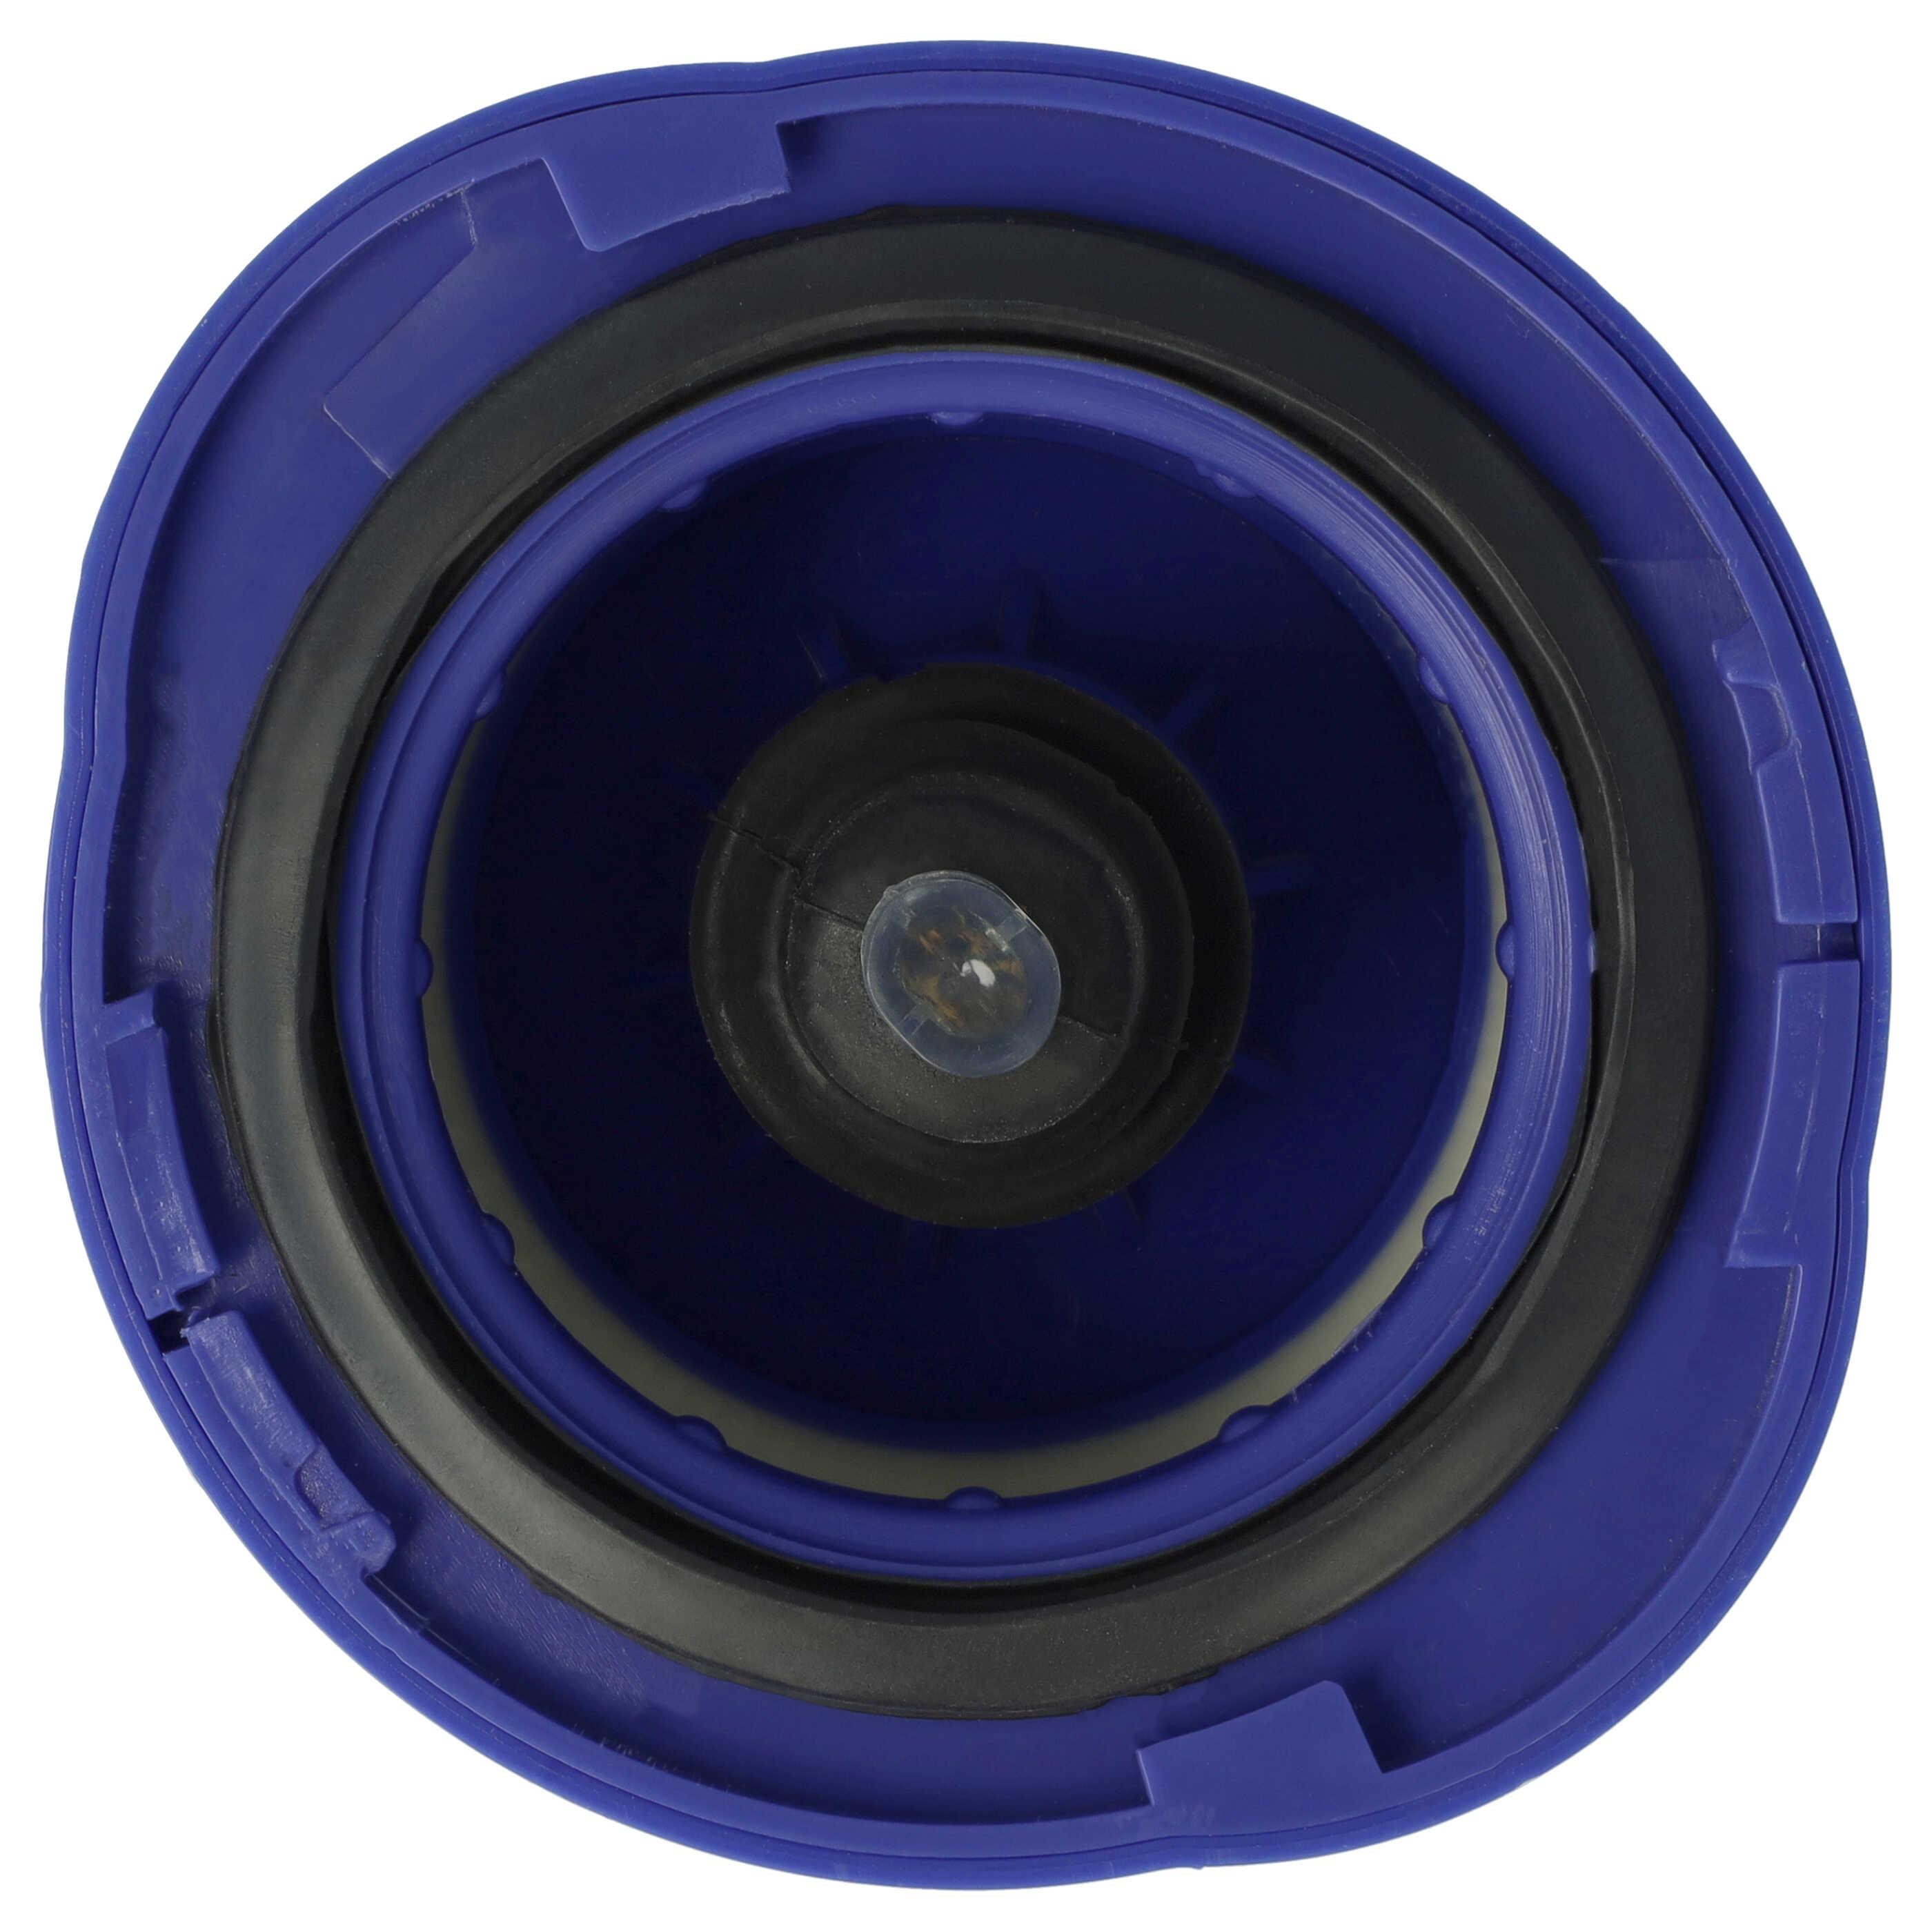 Filtro sostituisce Dyson 966741-01 per aspirapolvere - filtro HEPA post-motore, bianco / lilla